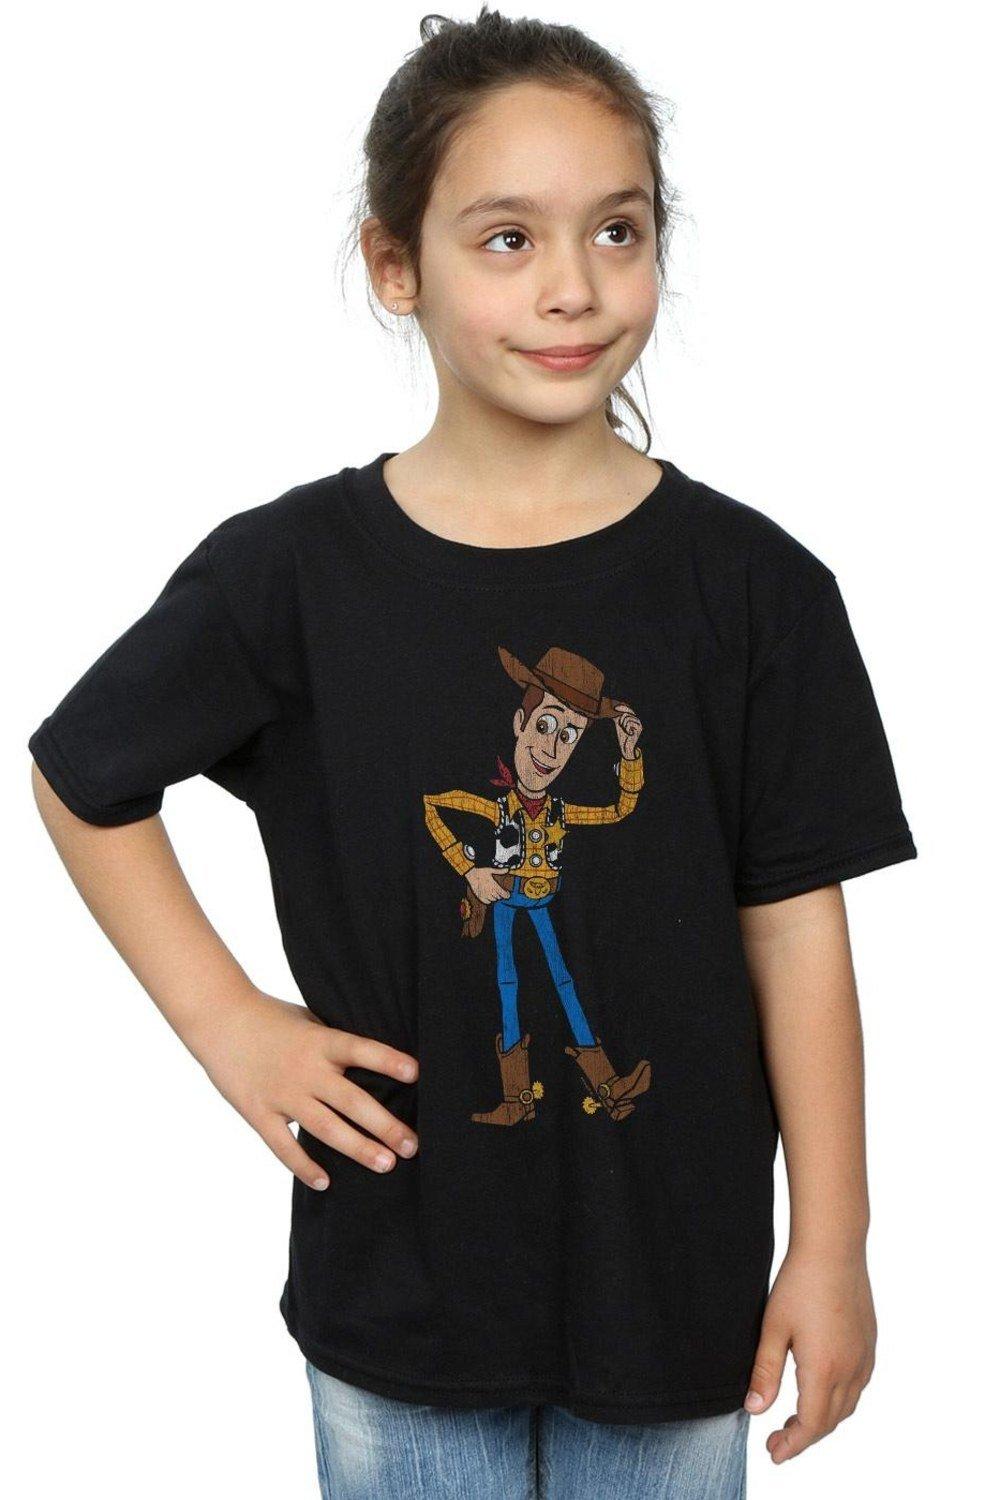 Хлопковая футболка «История игрушек 4: Шериф Вуди» Disney, черный